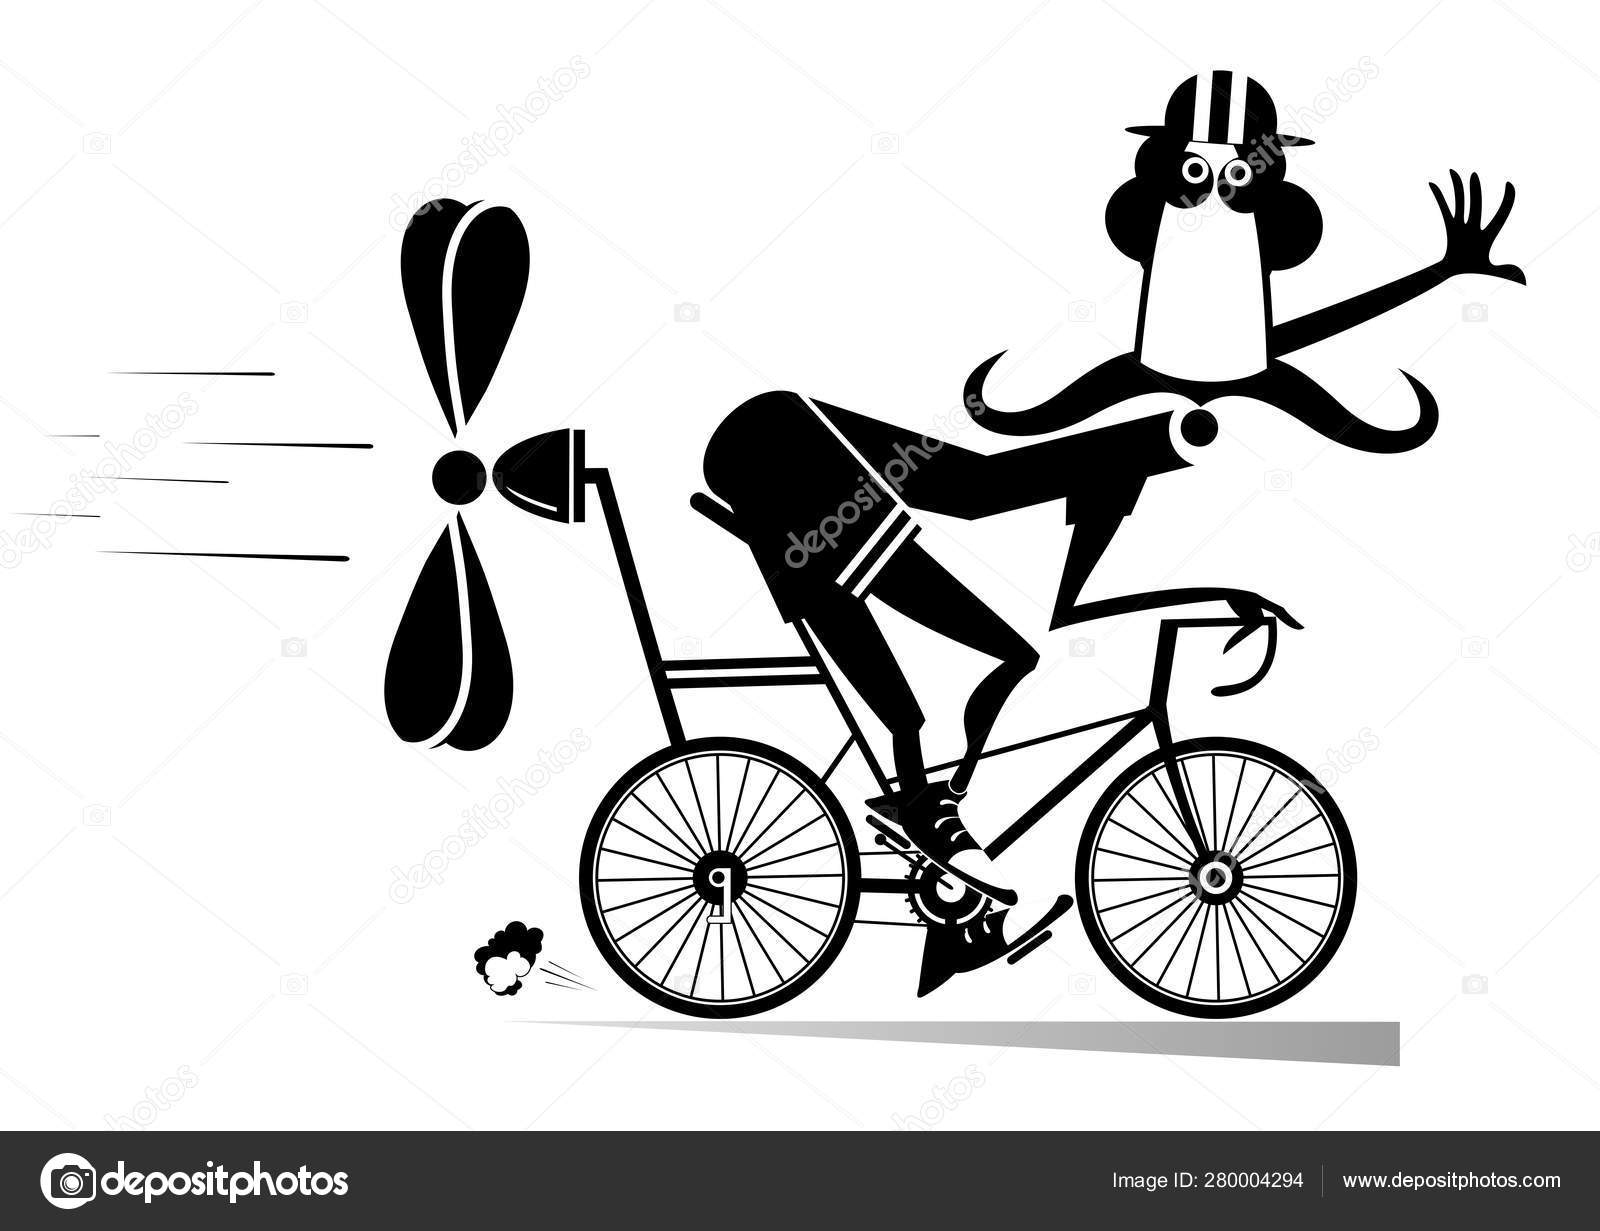 Um desenho preto e branco de um homem andando de moto.